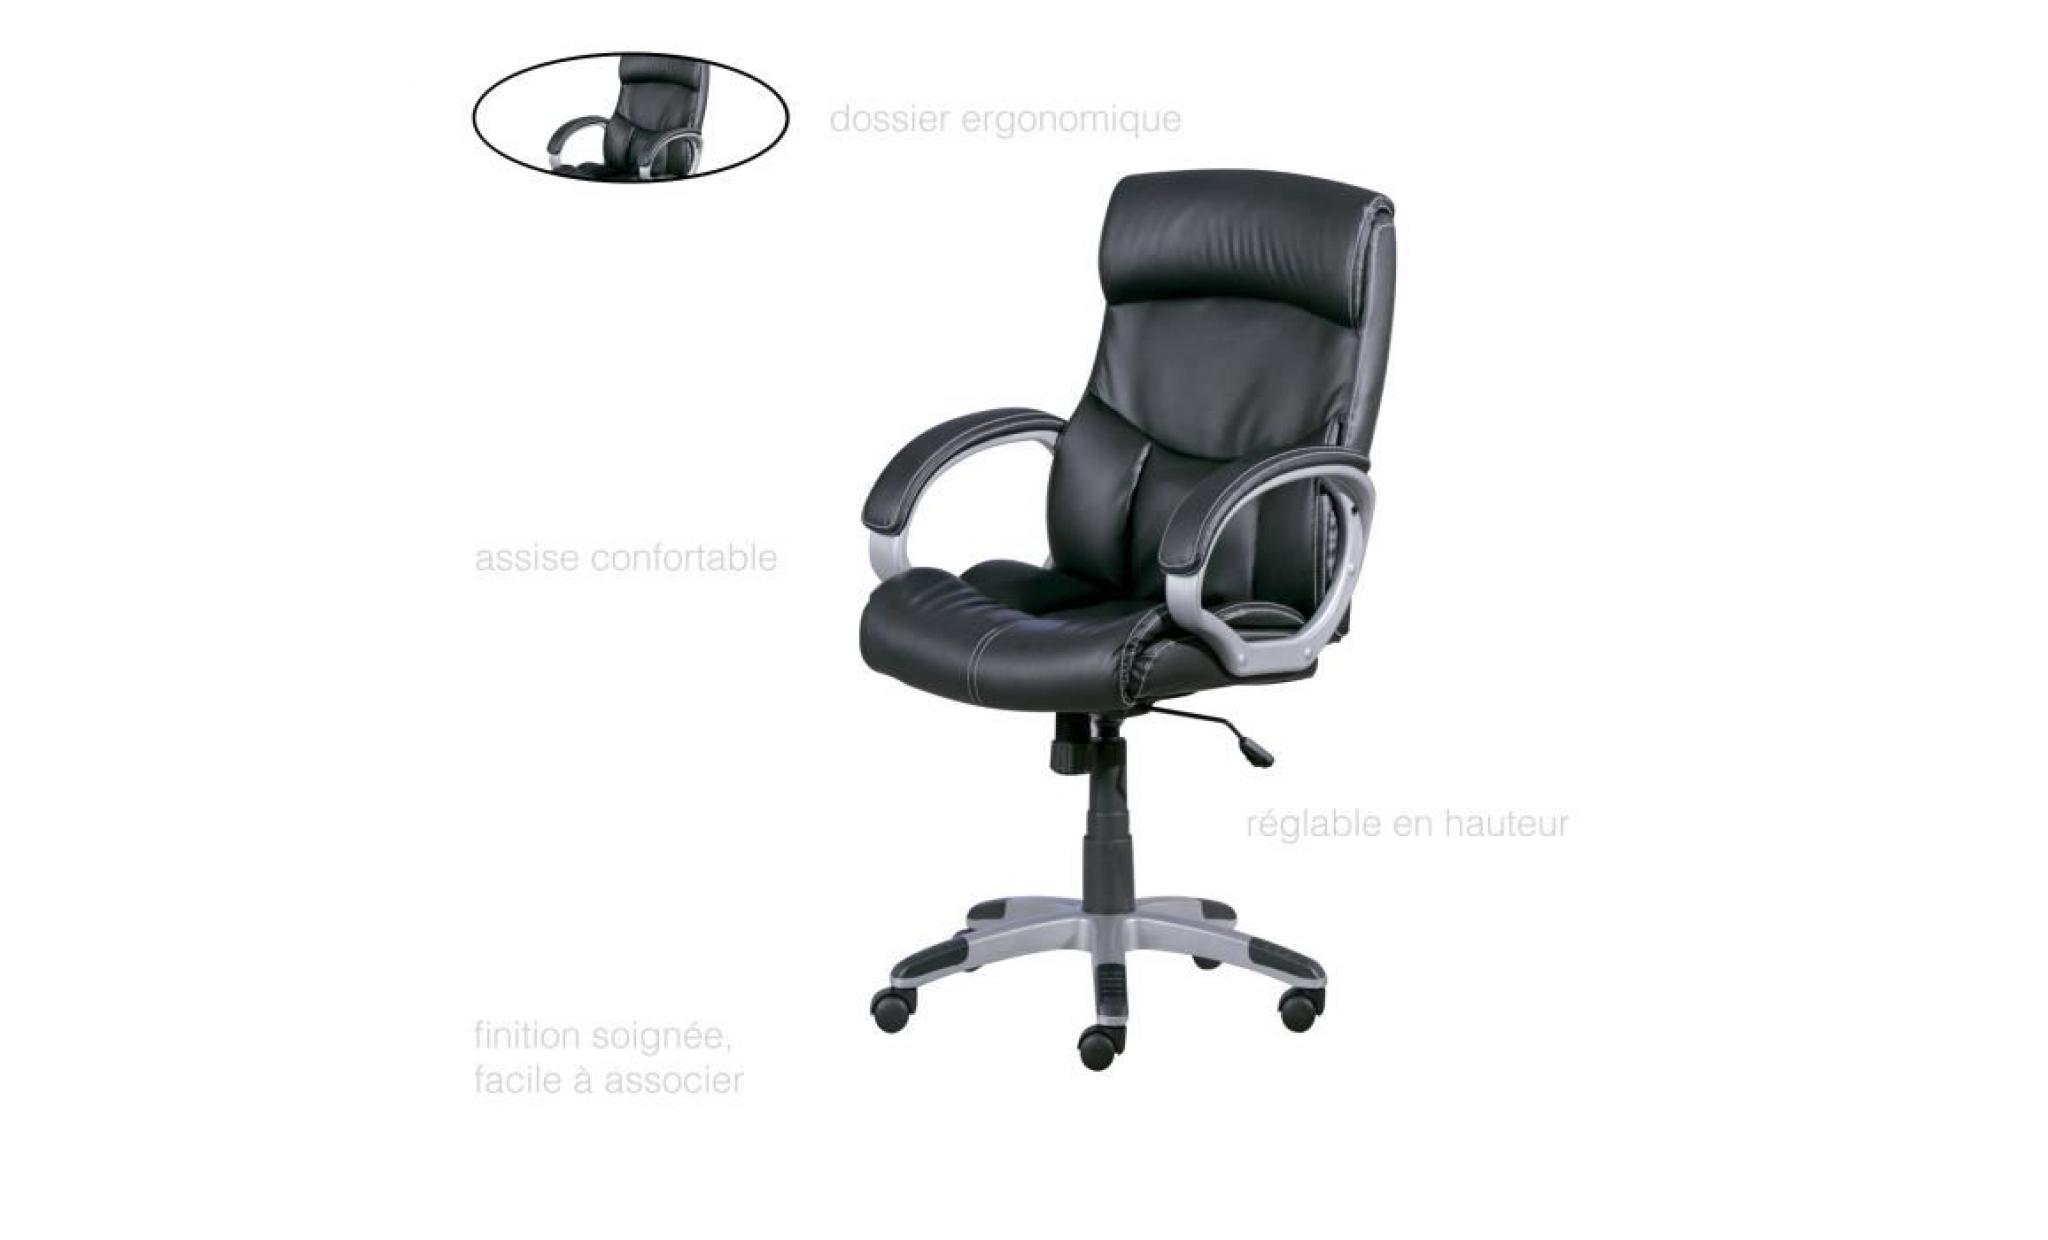 fauteuil bureau, chaise bureau, fauteuil bureau confort, fauteuil de bureau roulette fauteuil inclinable fauteuil bureau confortable